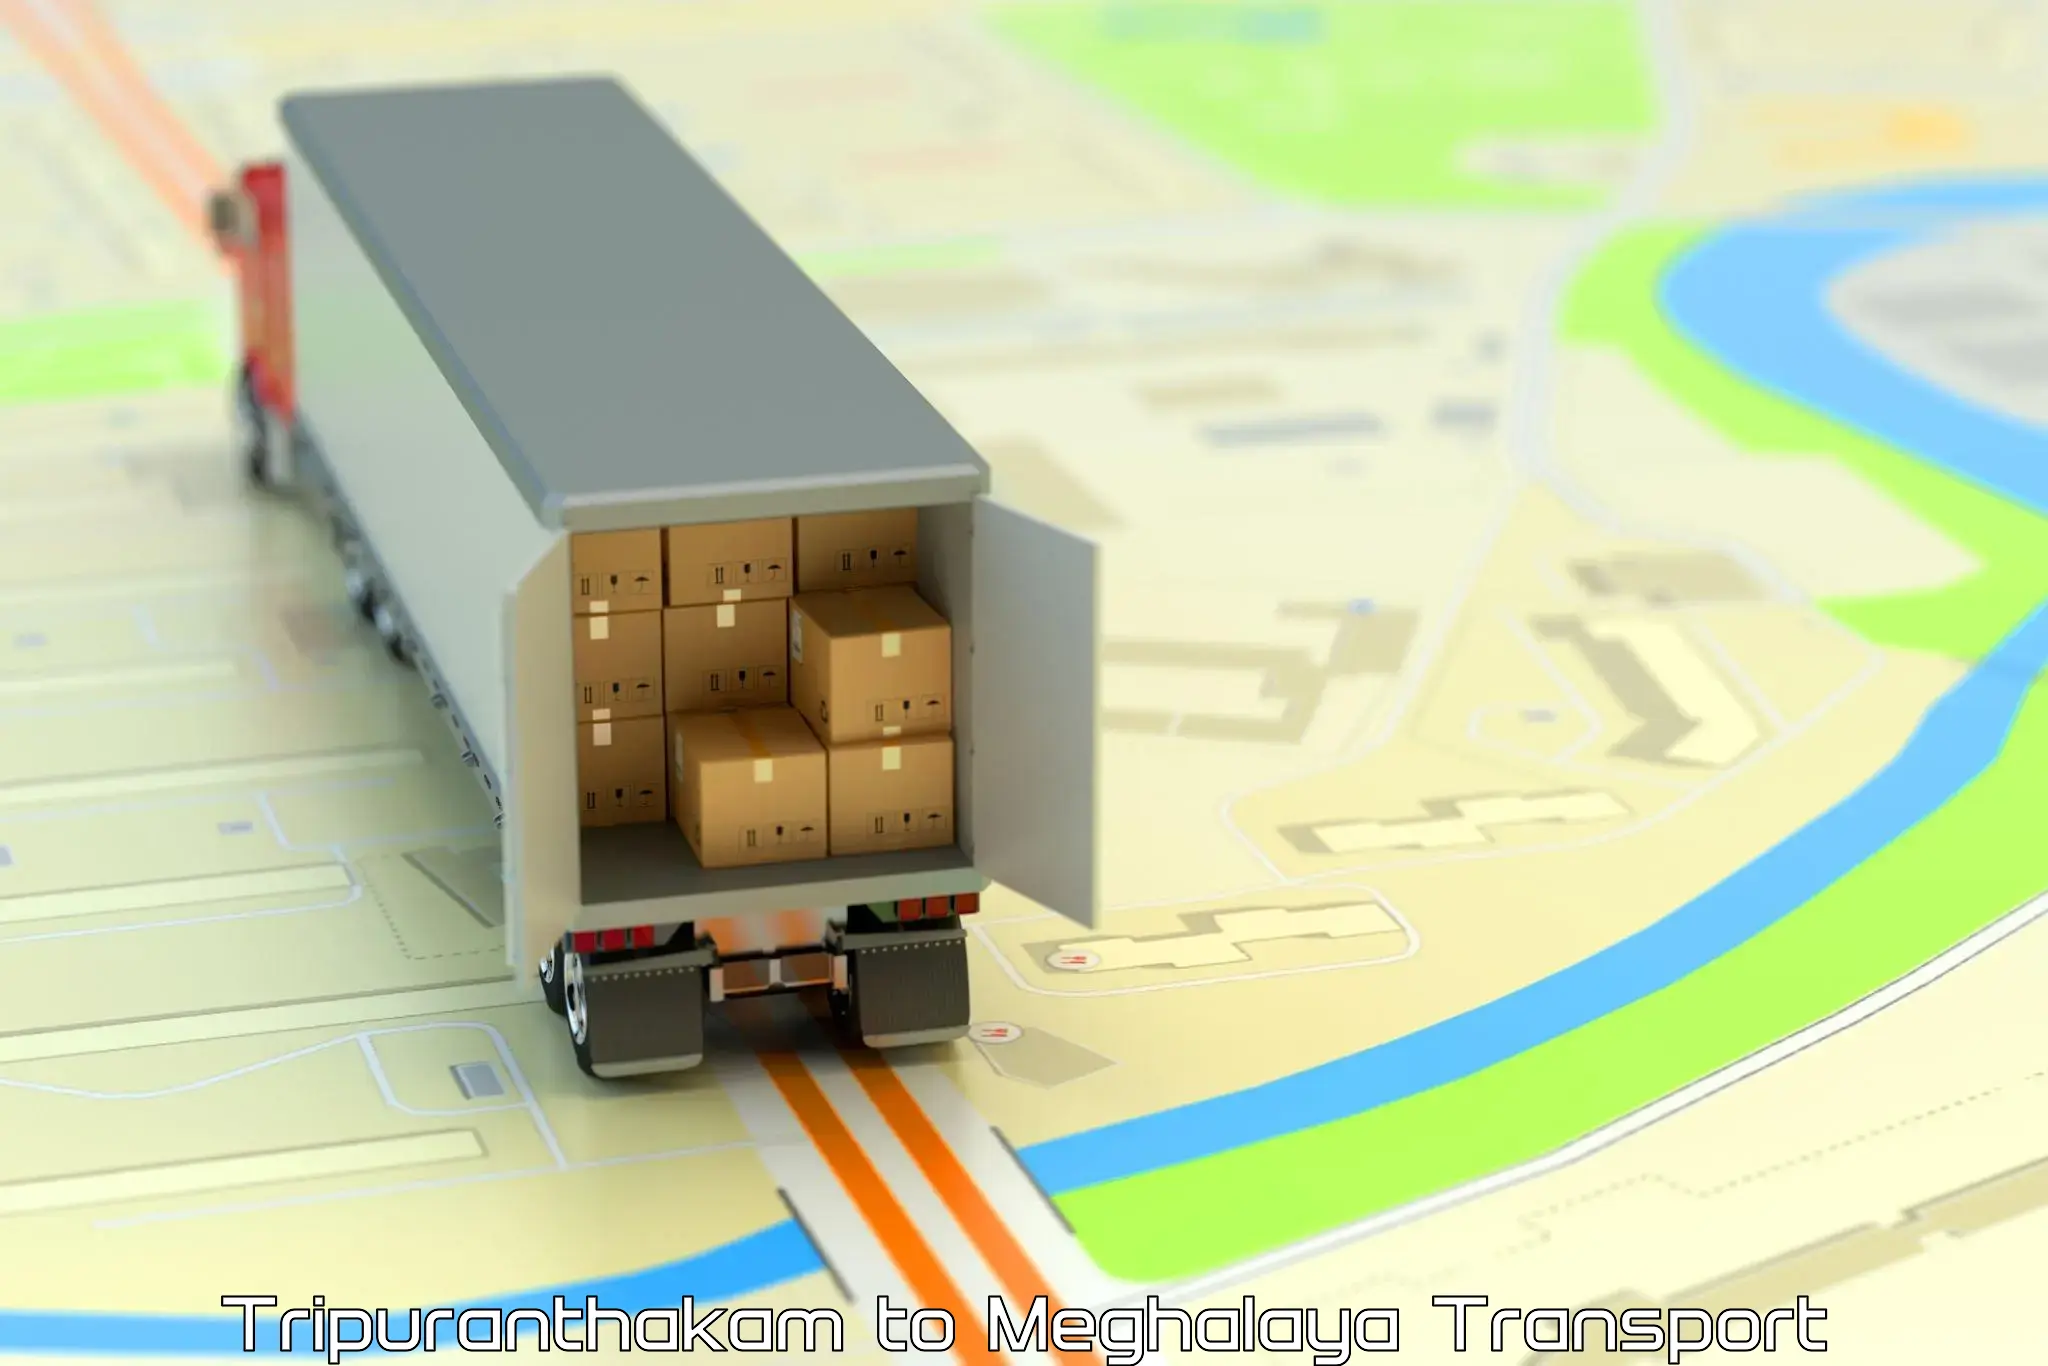 Truck transport companies in India Tripuranthakam to Phulbari